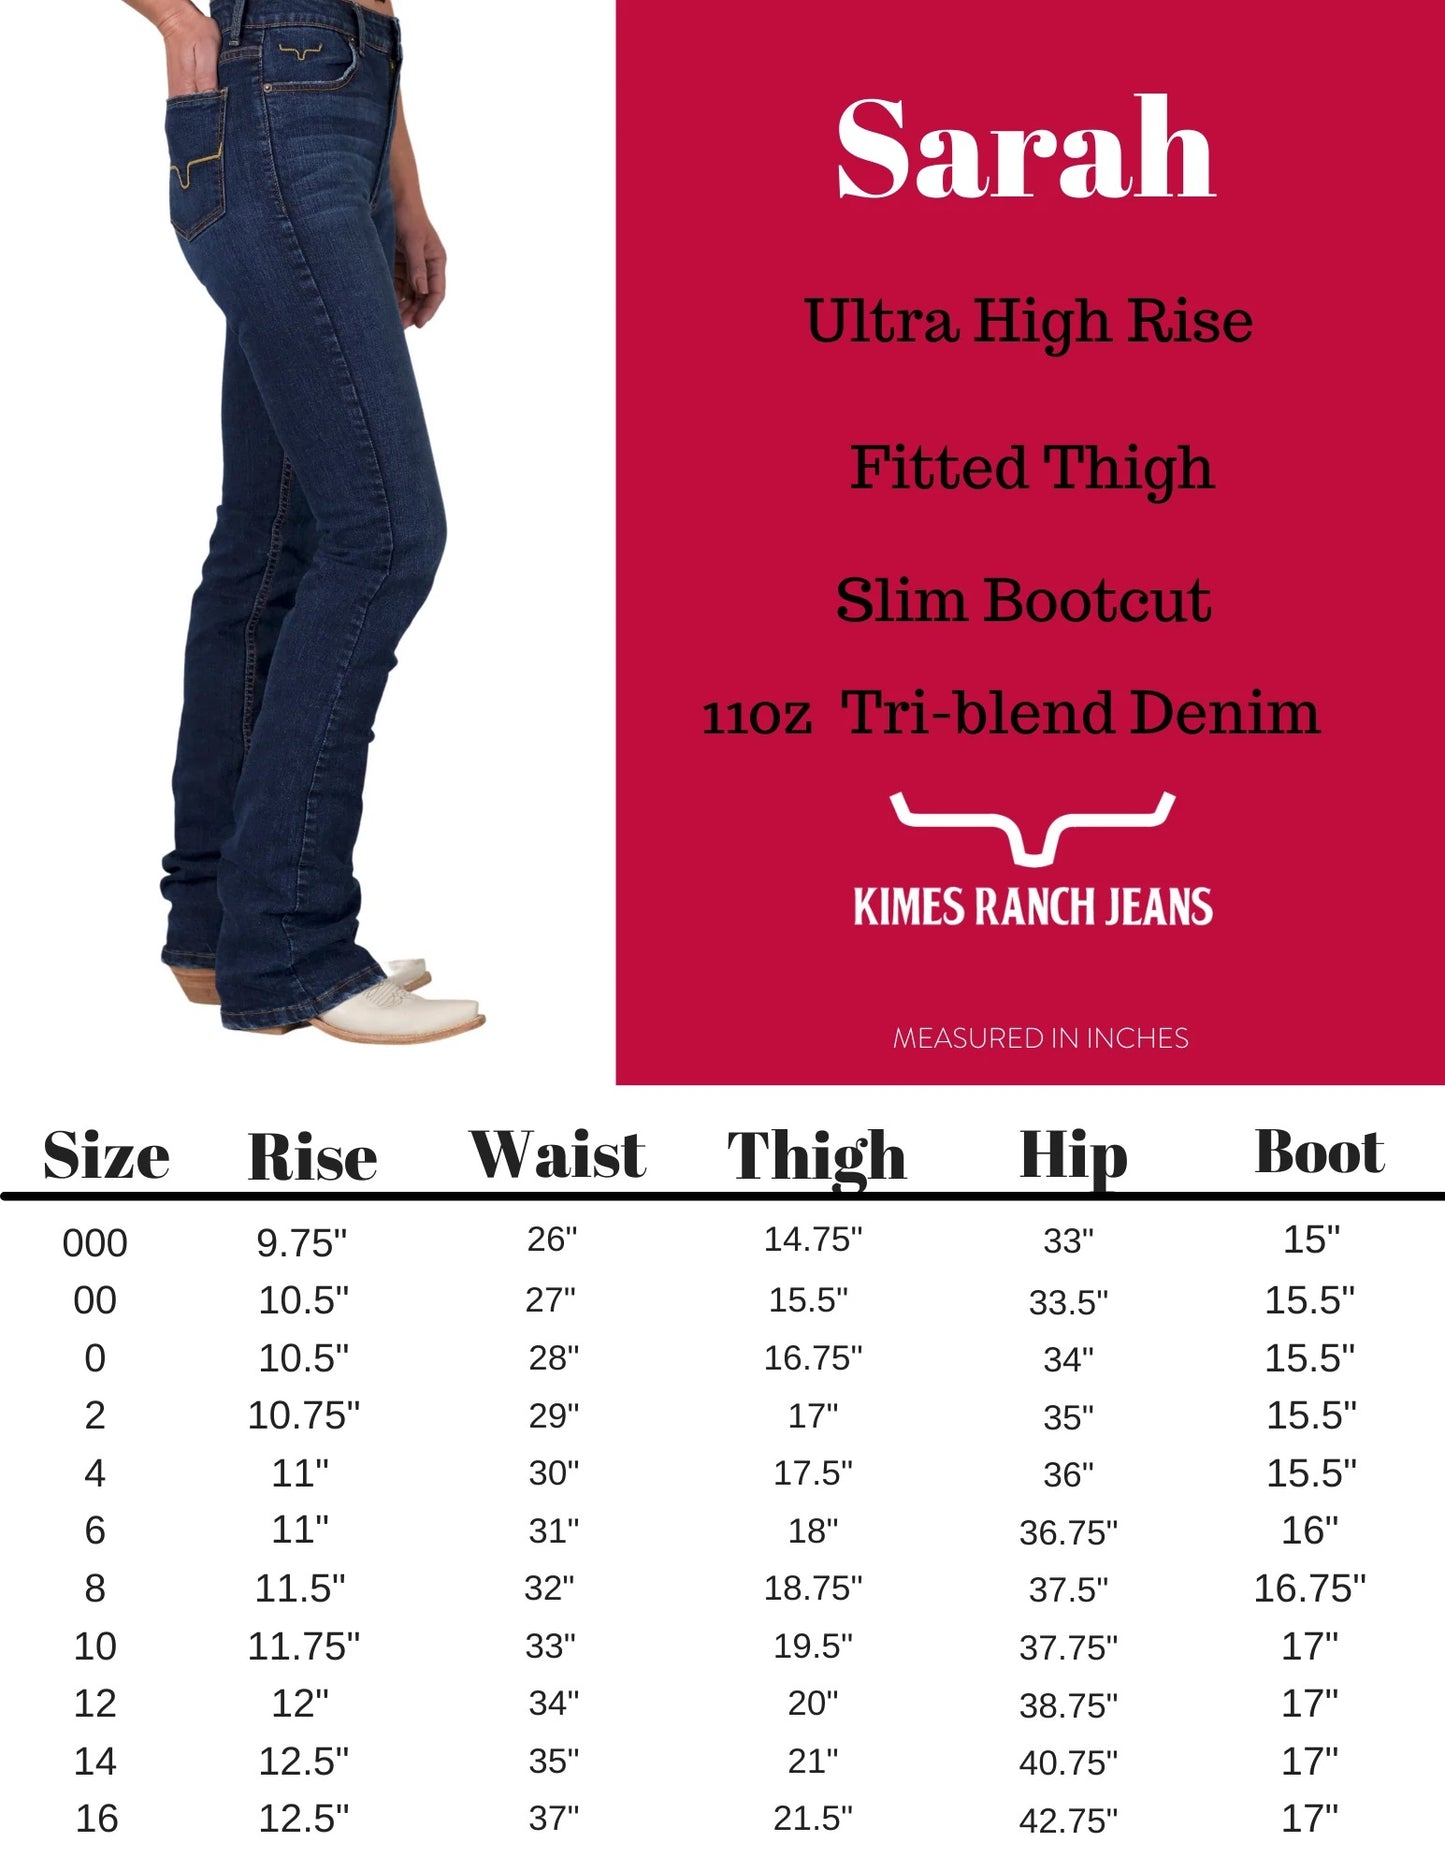 Kimes Ranch USA Ladies Sarah Jeans - 34", 36" Leg